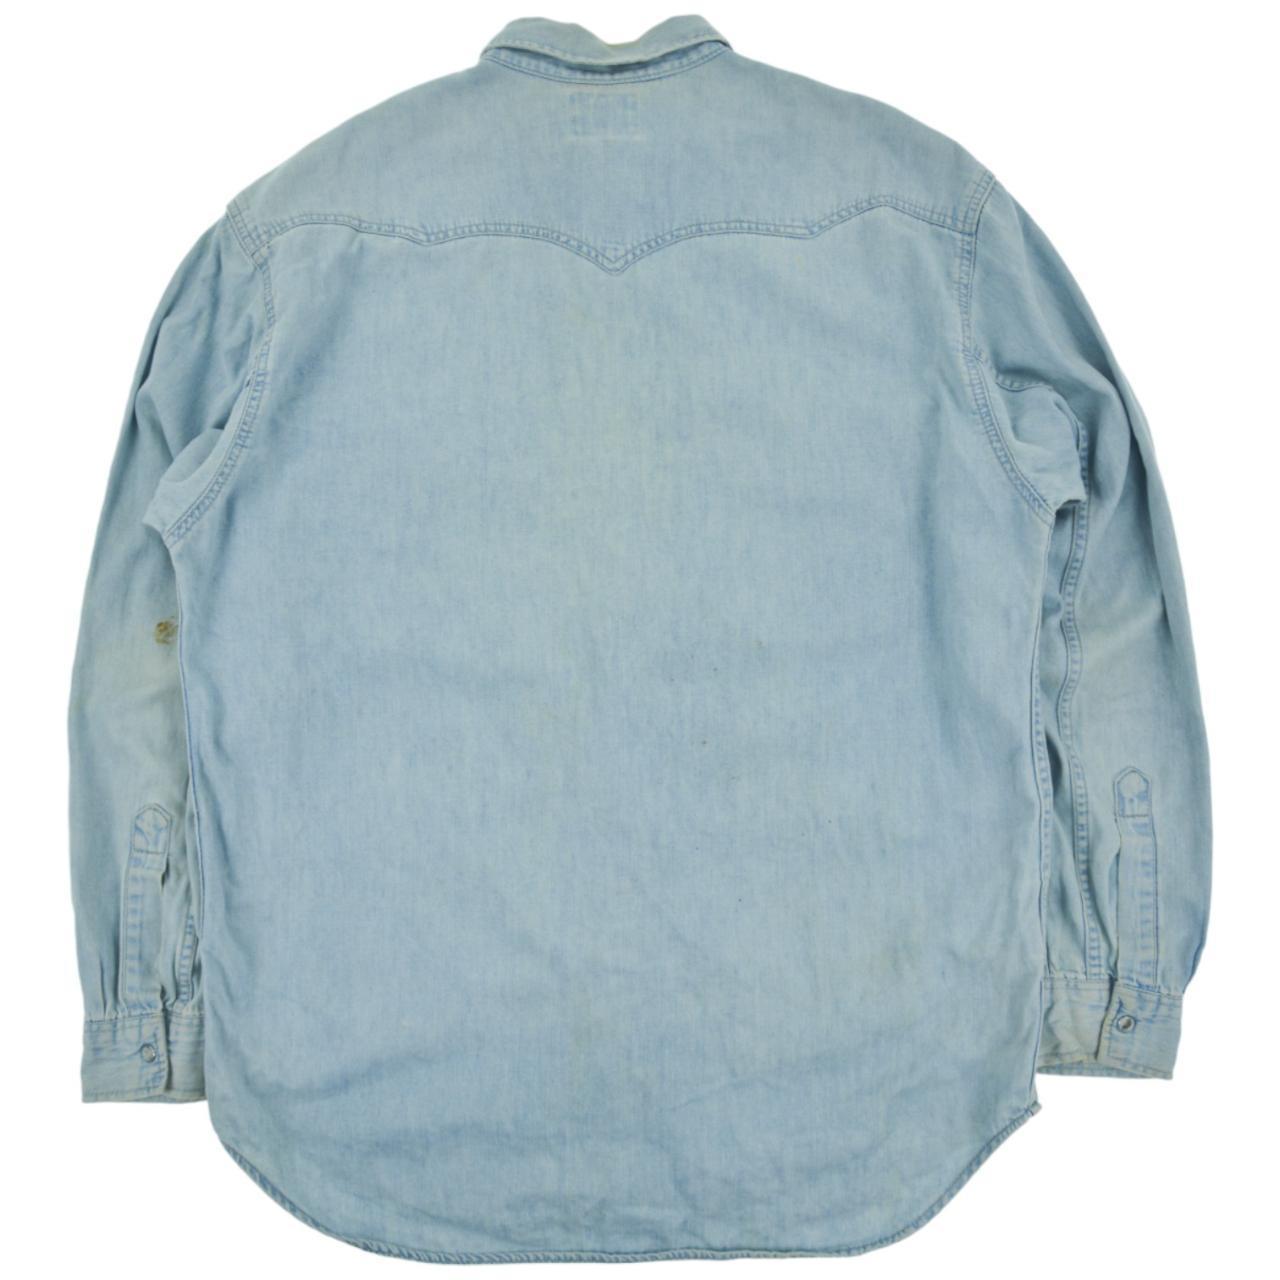 Vintage Levi Denim Shirt Size L - Known Source